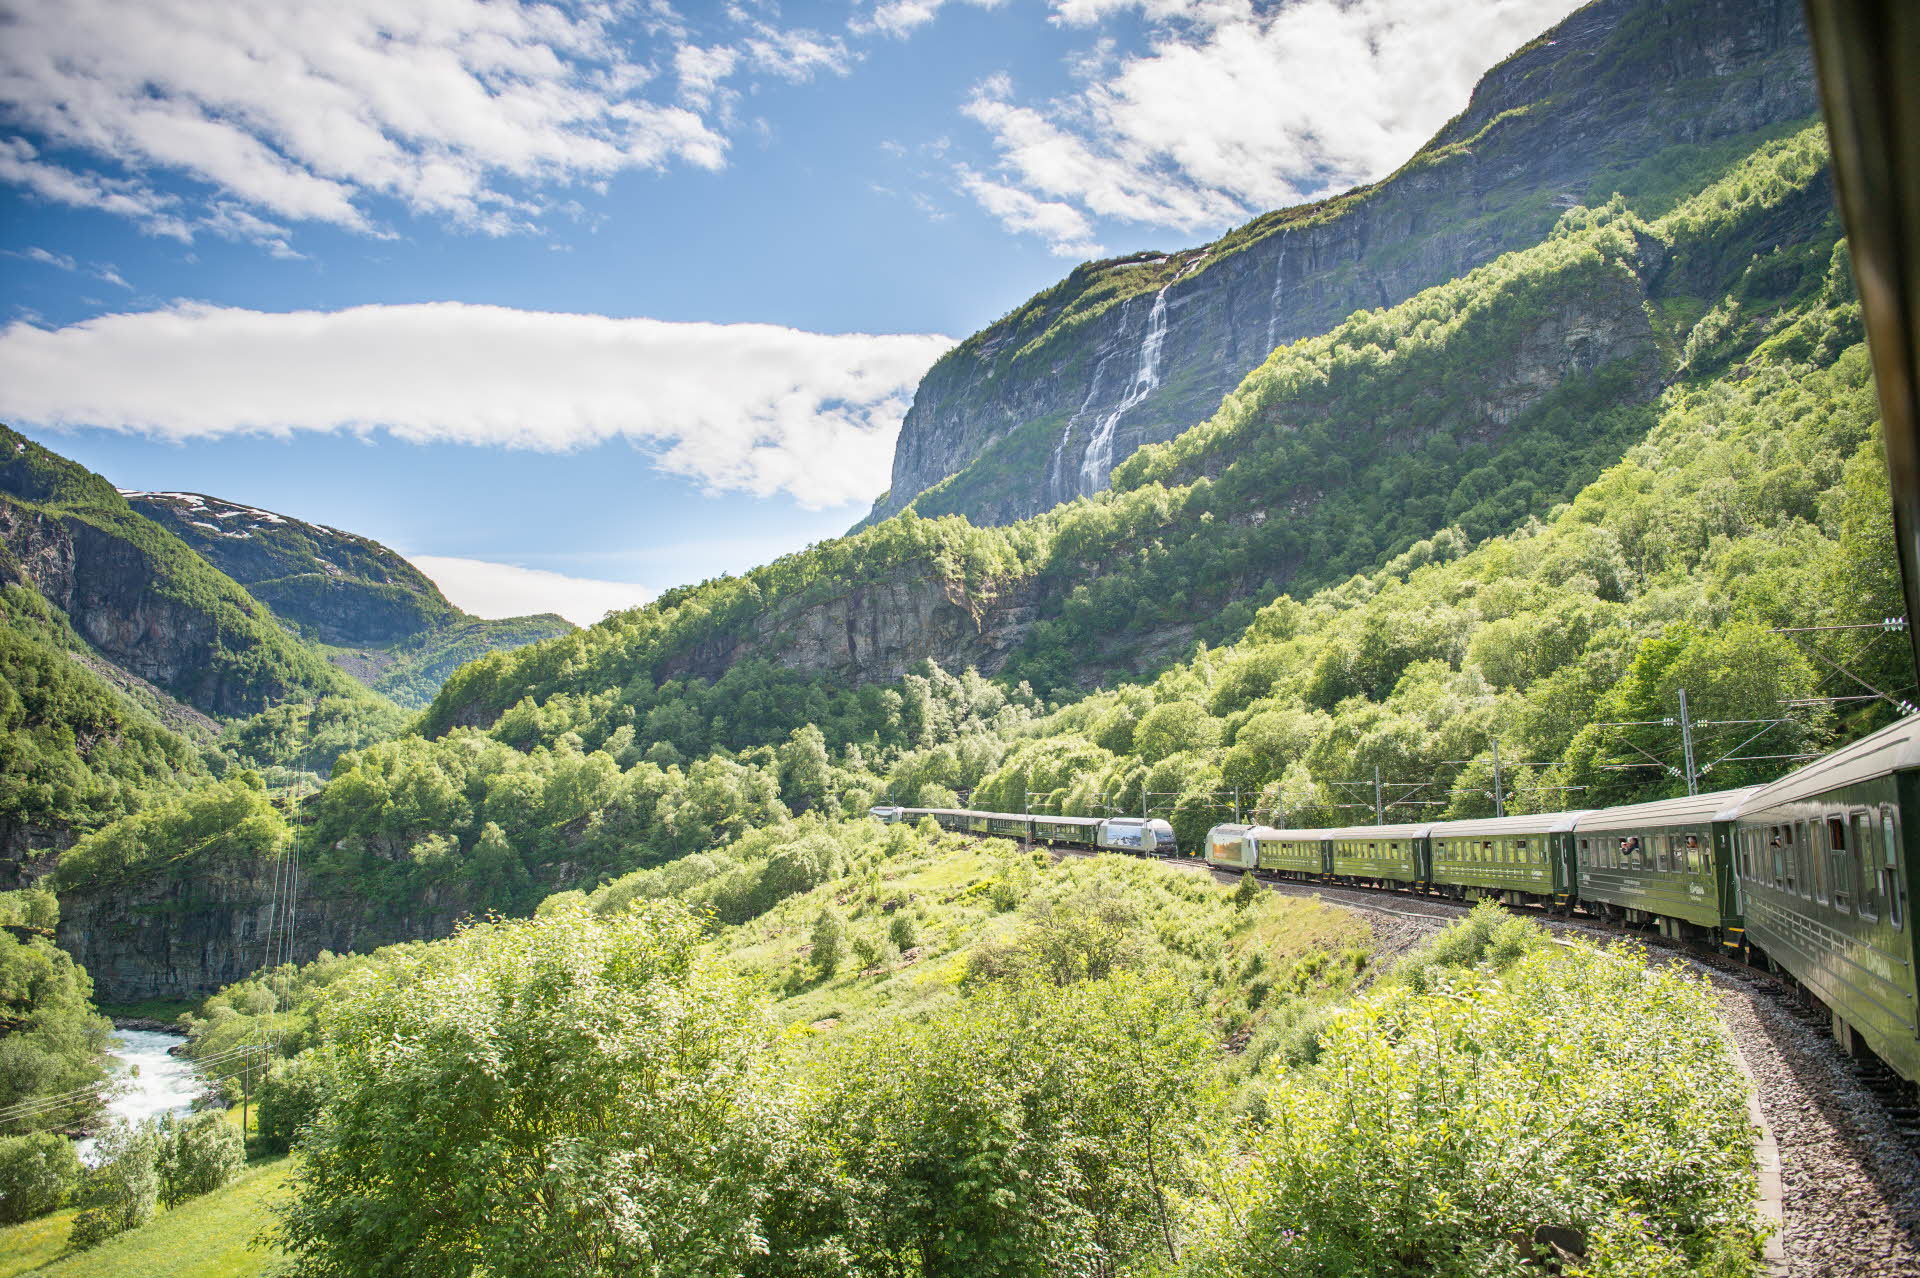 Flam 山谷，以及从列车车窗向外望，两辆列车正好相遇。翠绿的山坡，蔚蓝的天空，还有瀑布。 